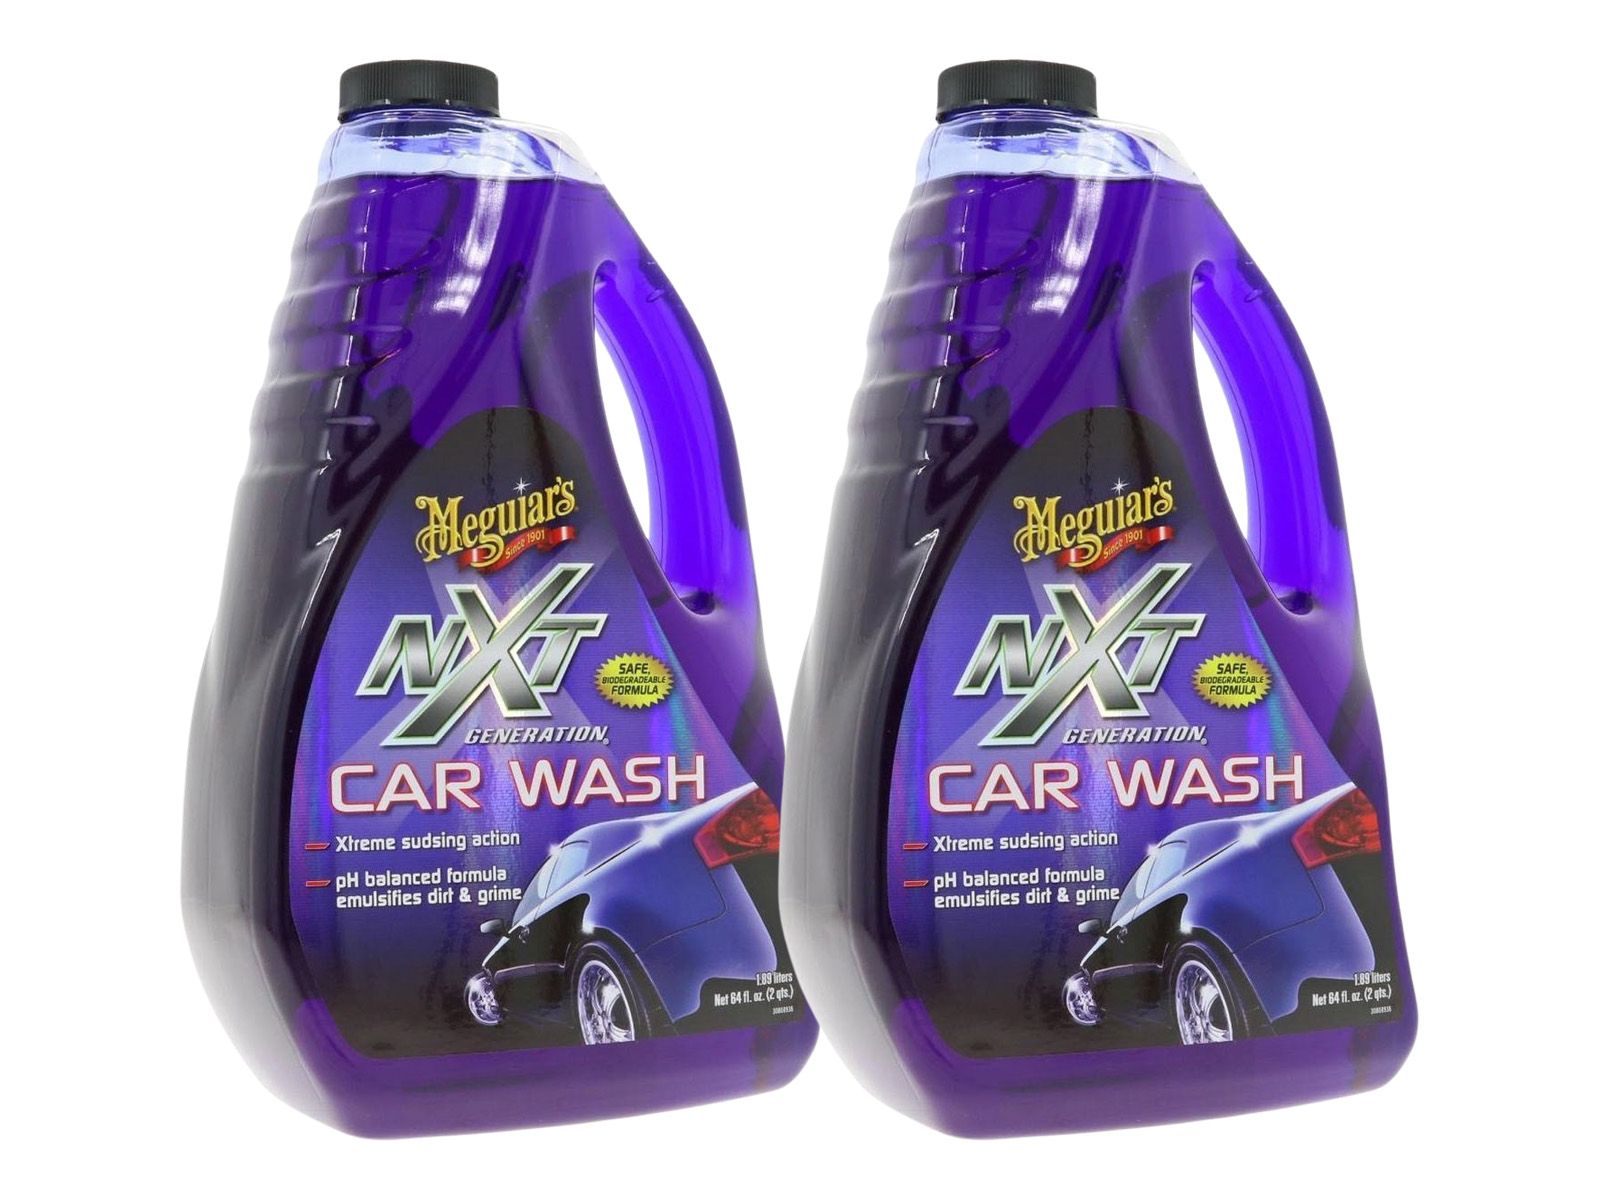 2x-meguiars-nxt-generation-car-wash